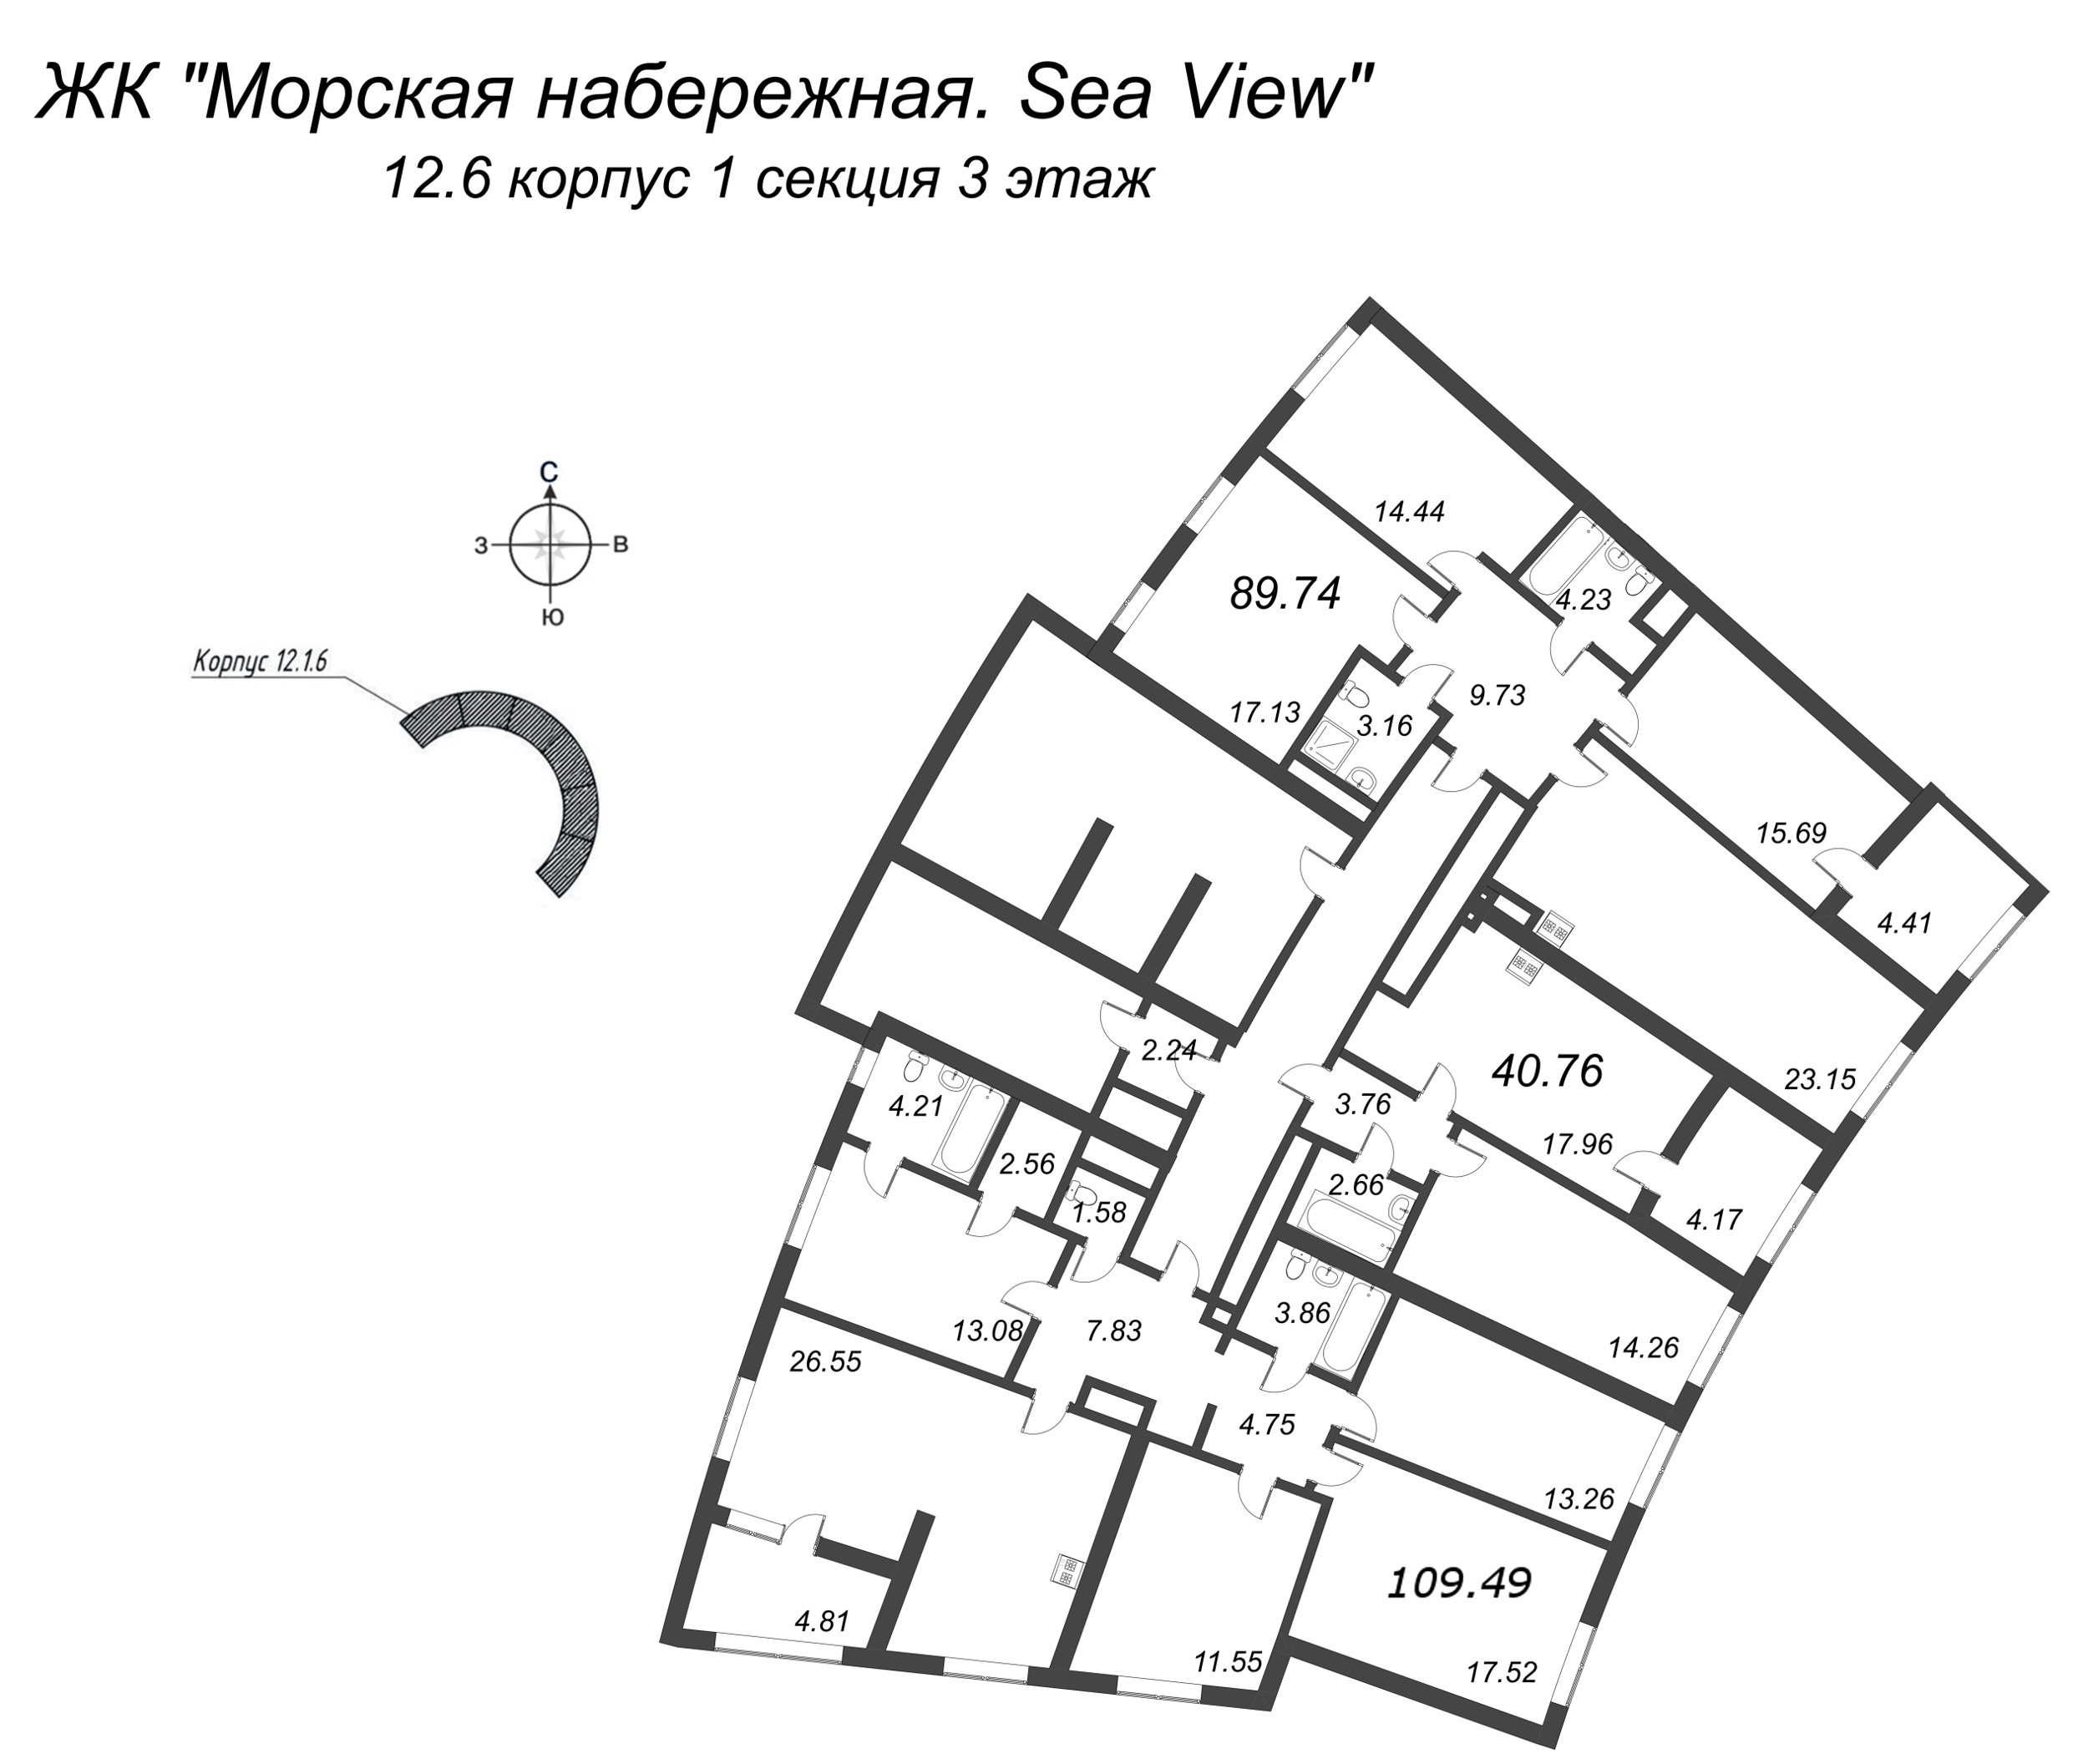 5-комнатная (Евро) квартира, 109.49 м² в ЖК "Морская набережная. SeaView" - планировка этажа